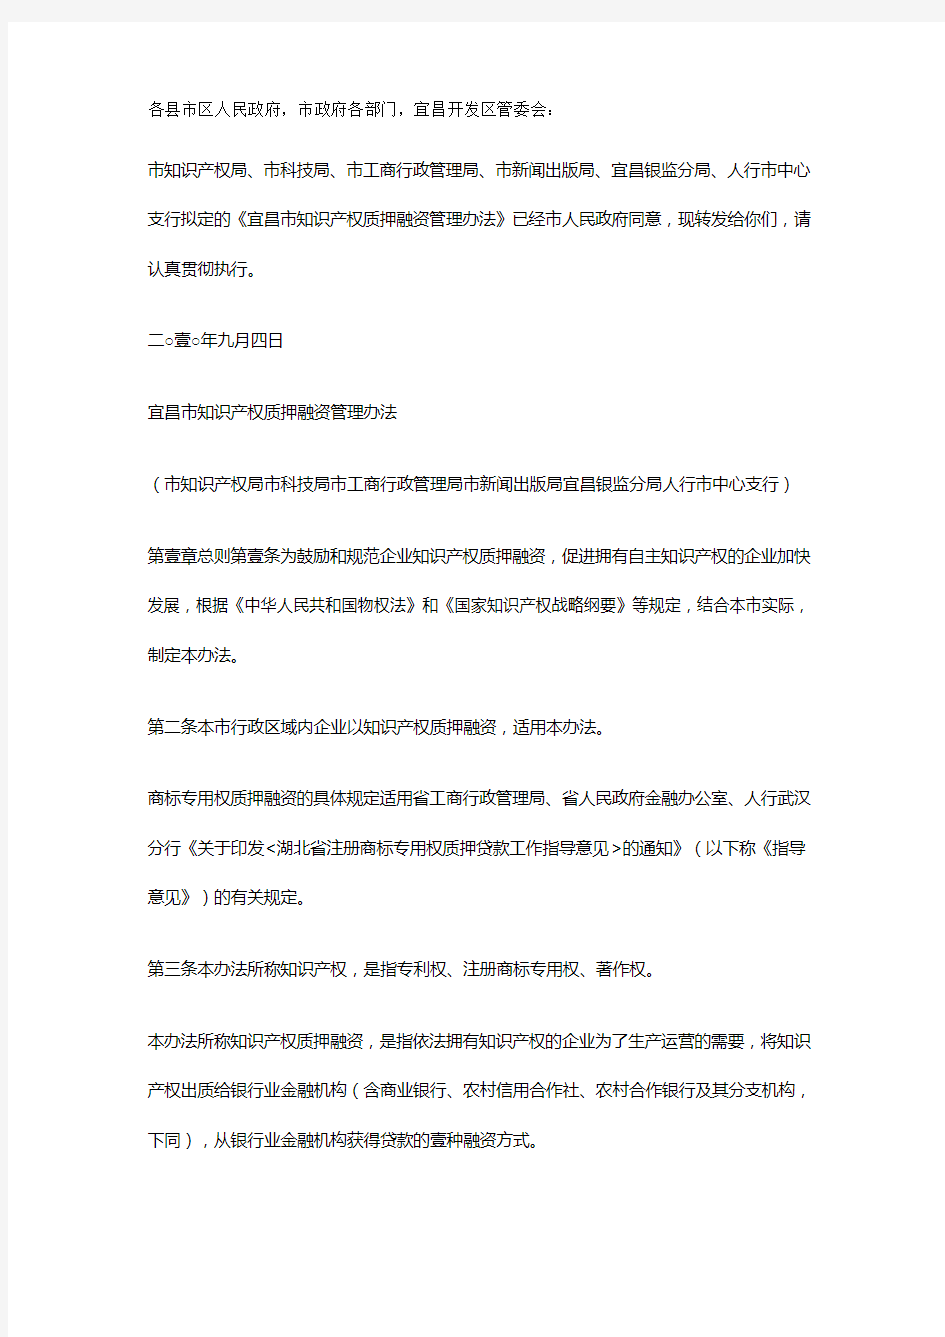 【管理制度)宜昌市知识产权质押融资管理办法